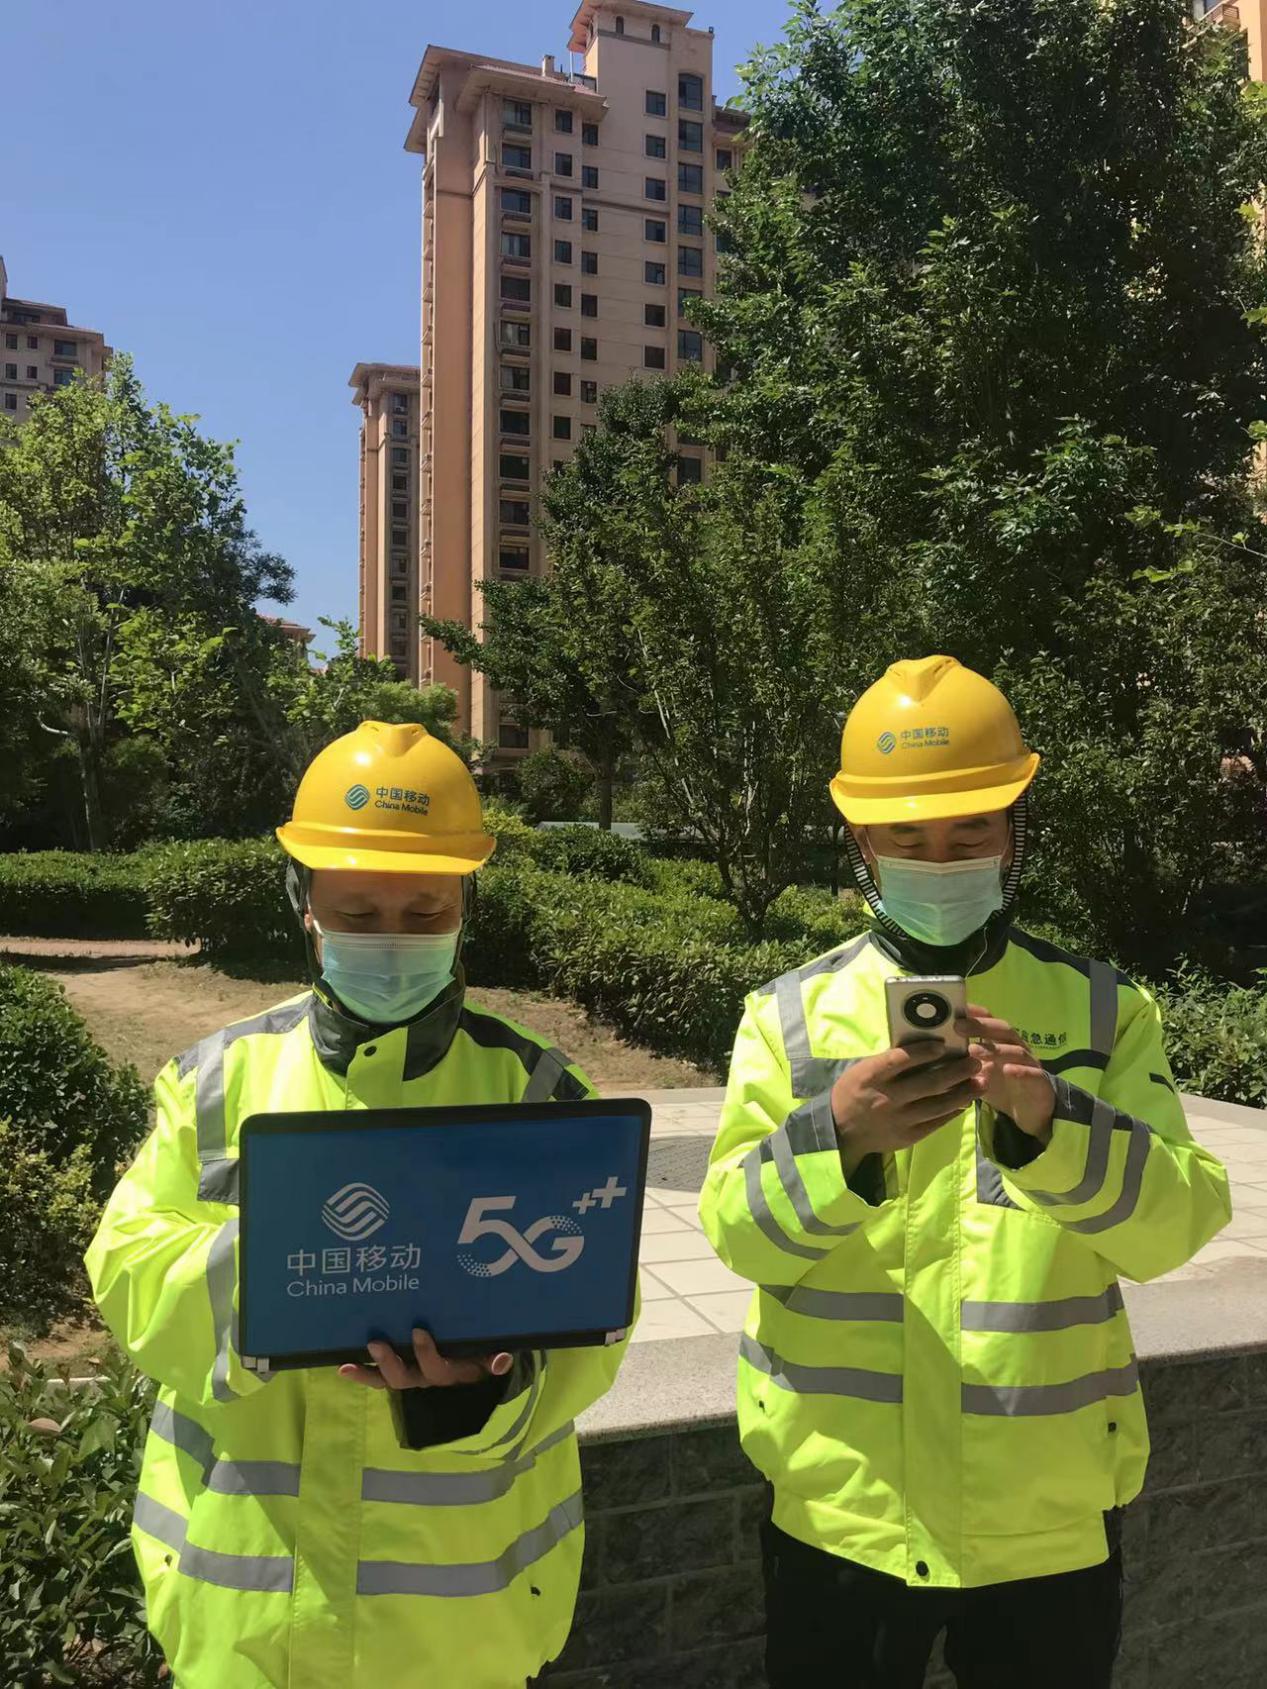 中国移动 5G 网络激活步骤及全新体验详细介绍  第7张